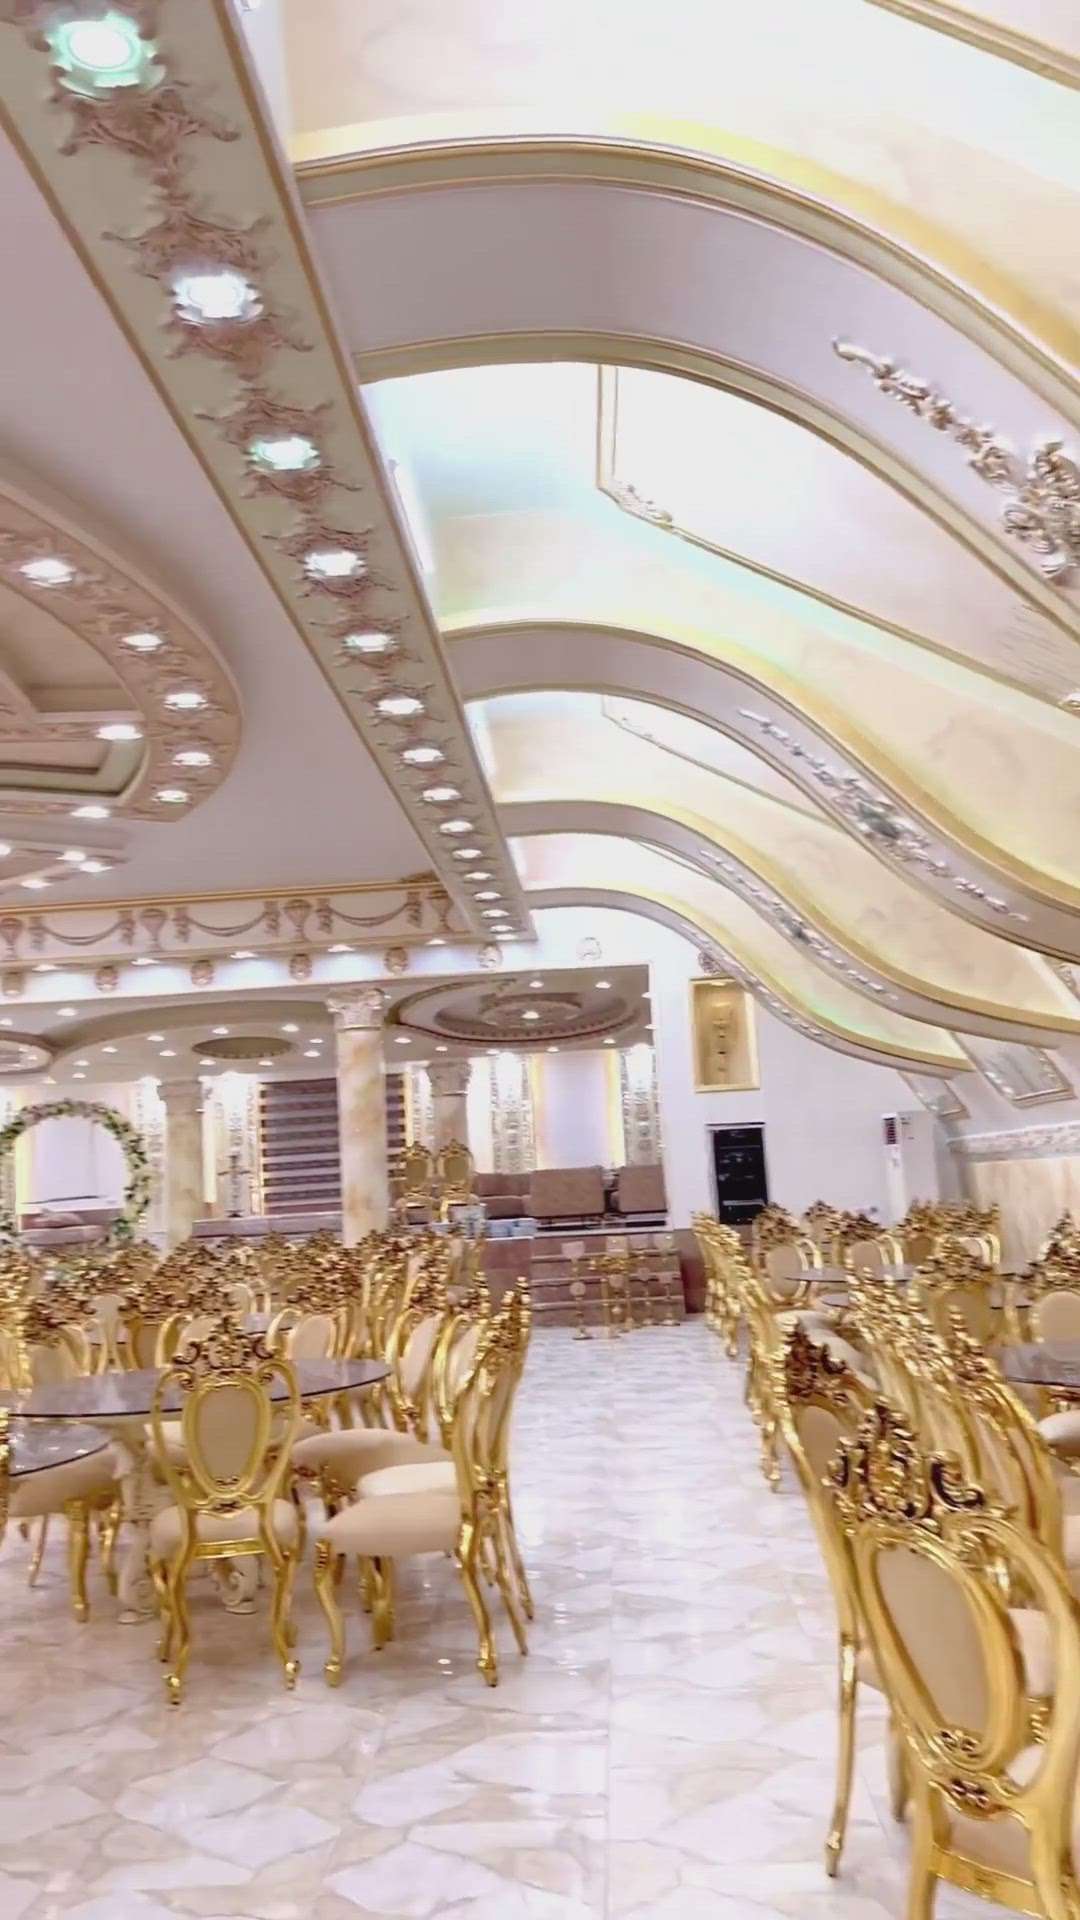 gold leafing in furniture 
marriage hall #golddecor  #goldleafartwork  #intrior_design  #furnitures  #